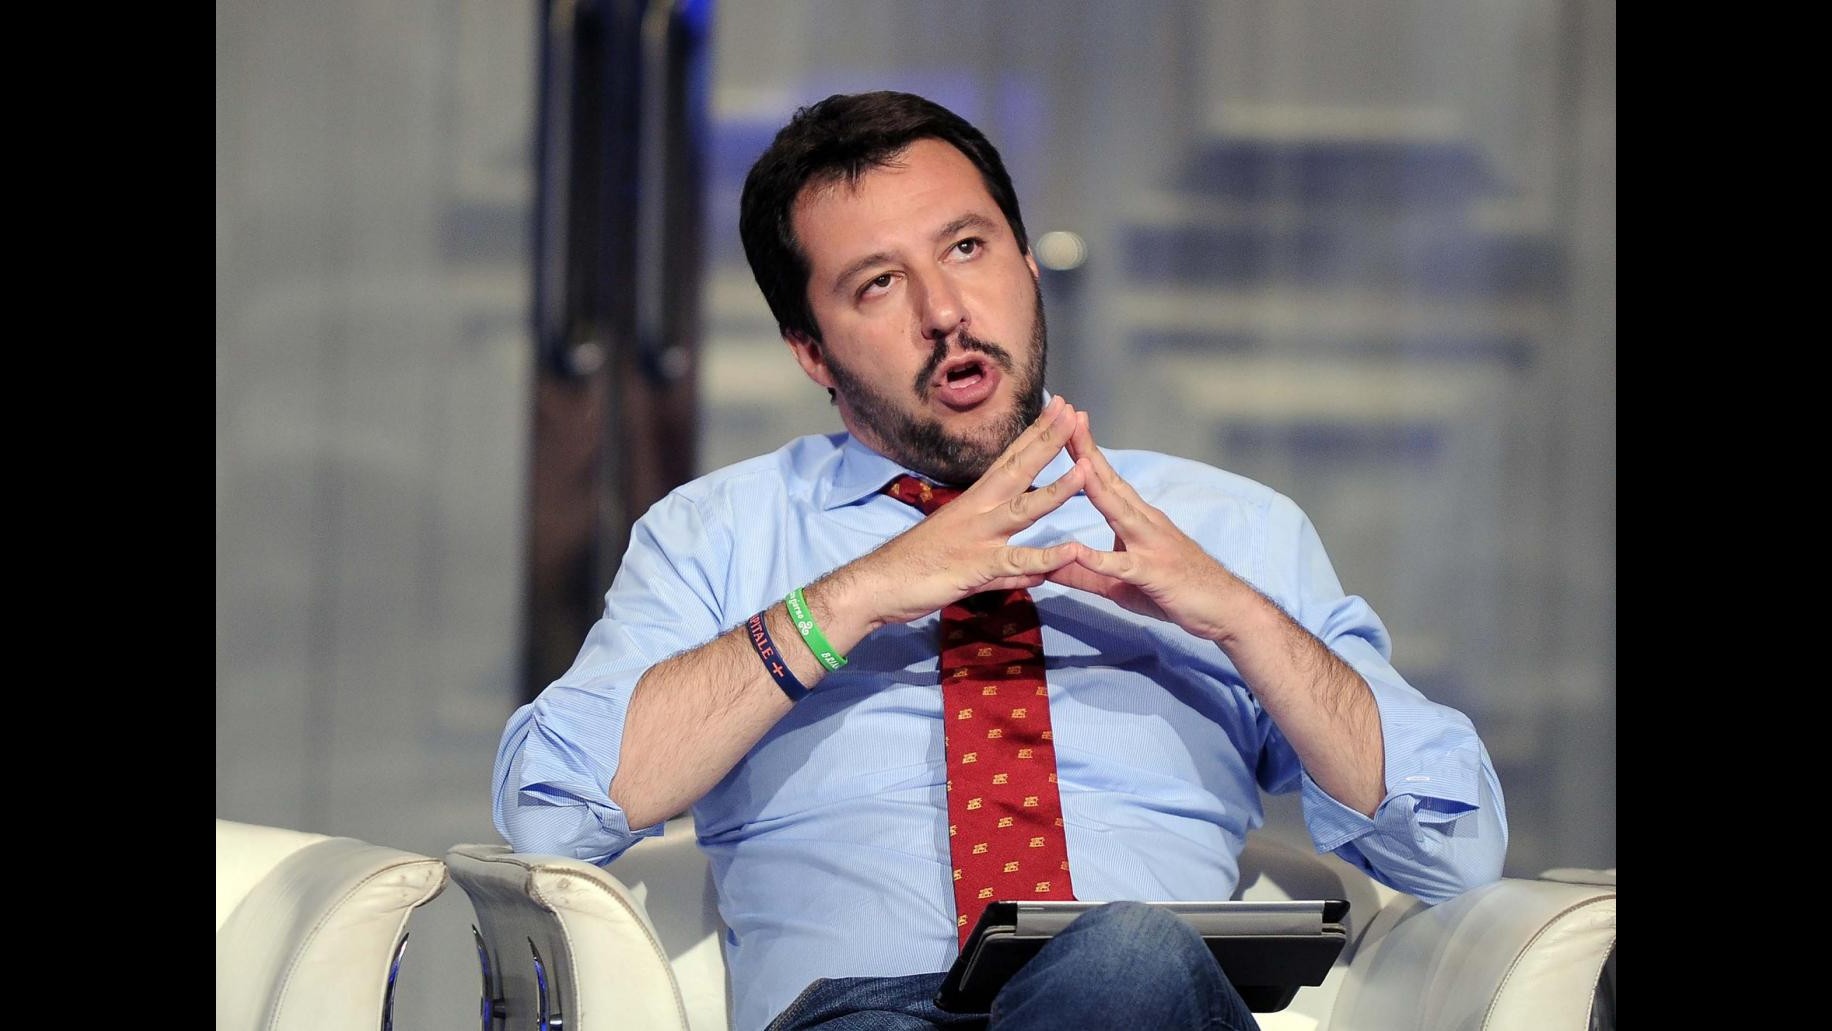 Segretario Lega presenta simbolo nuovo partito ‘Noi con Salvini’